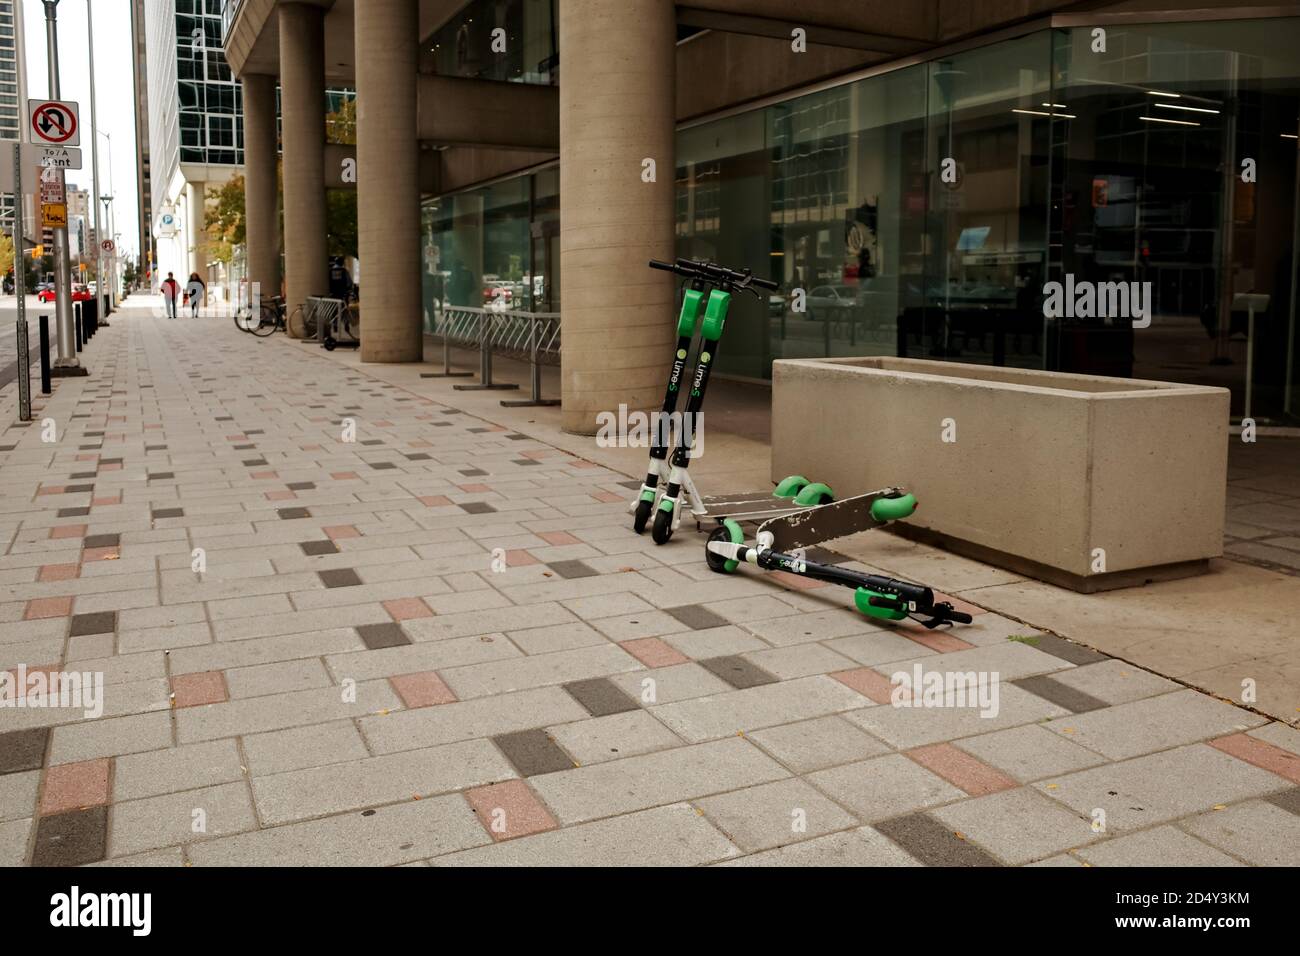 Ottawa, Ontario, Canada - 8 ottobre 2020: Tre scooter elettrici Lime-S, uno dei quali è caduto, sono a riposo su un marciapiede del centro di Ottawa. Foto Stock